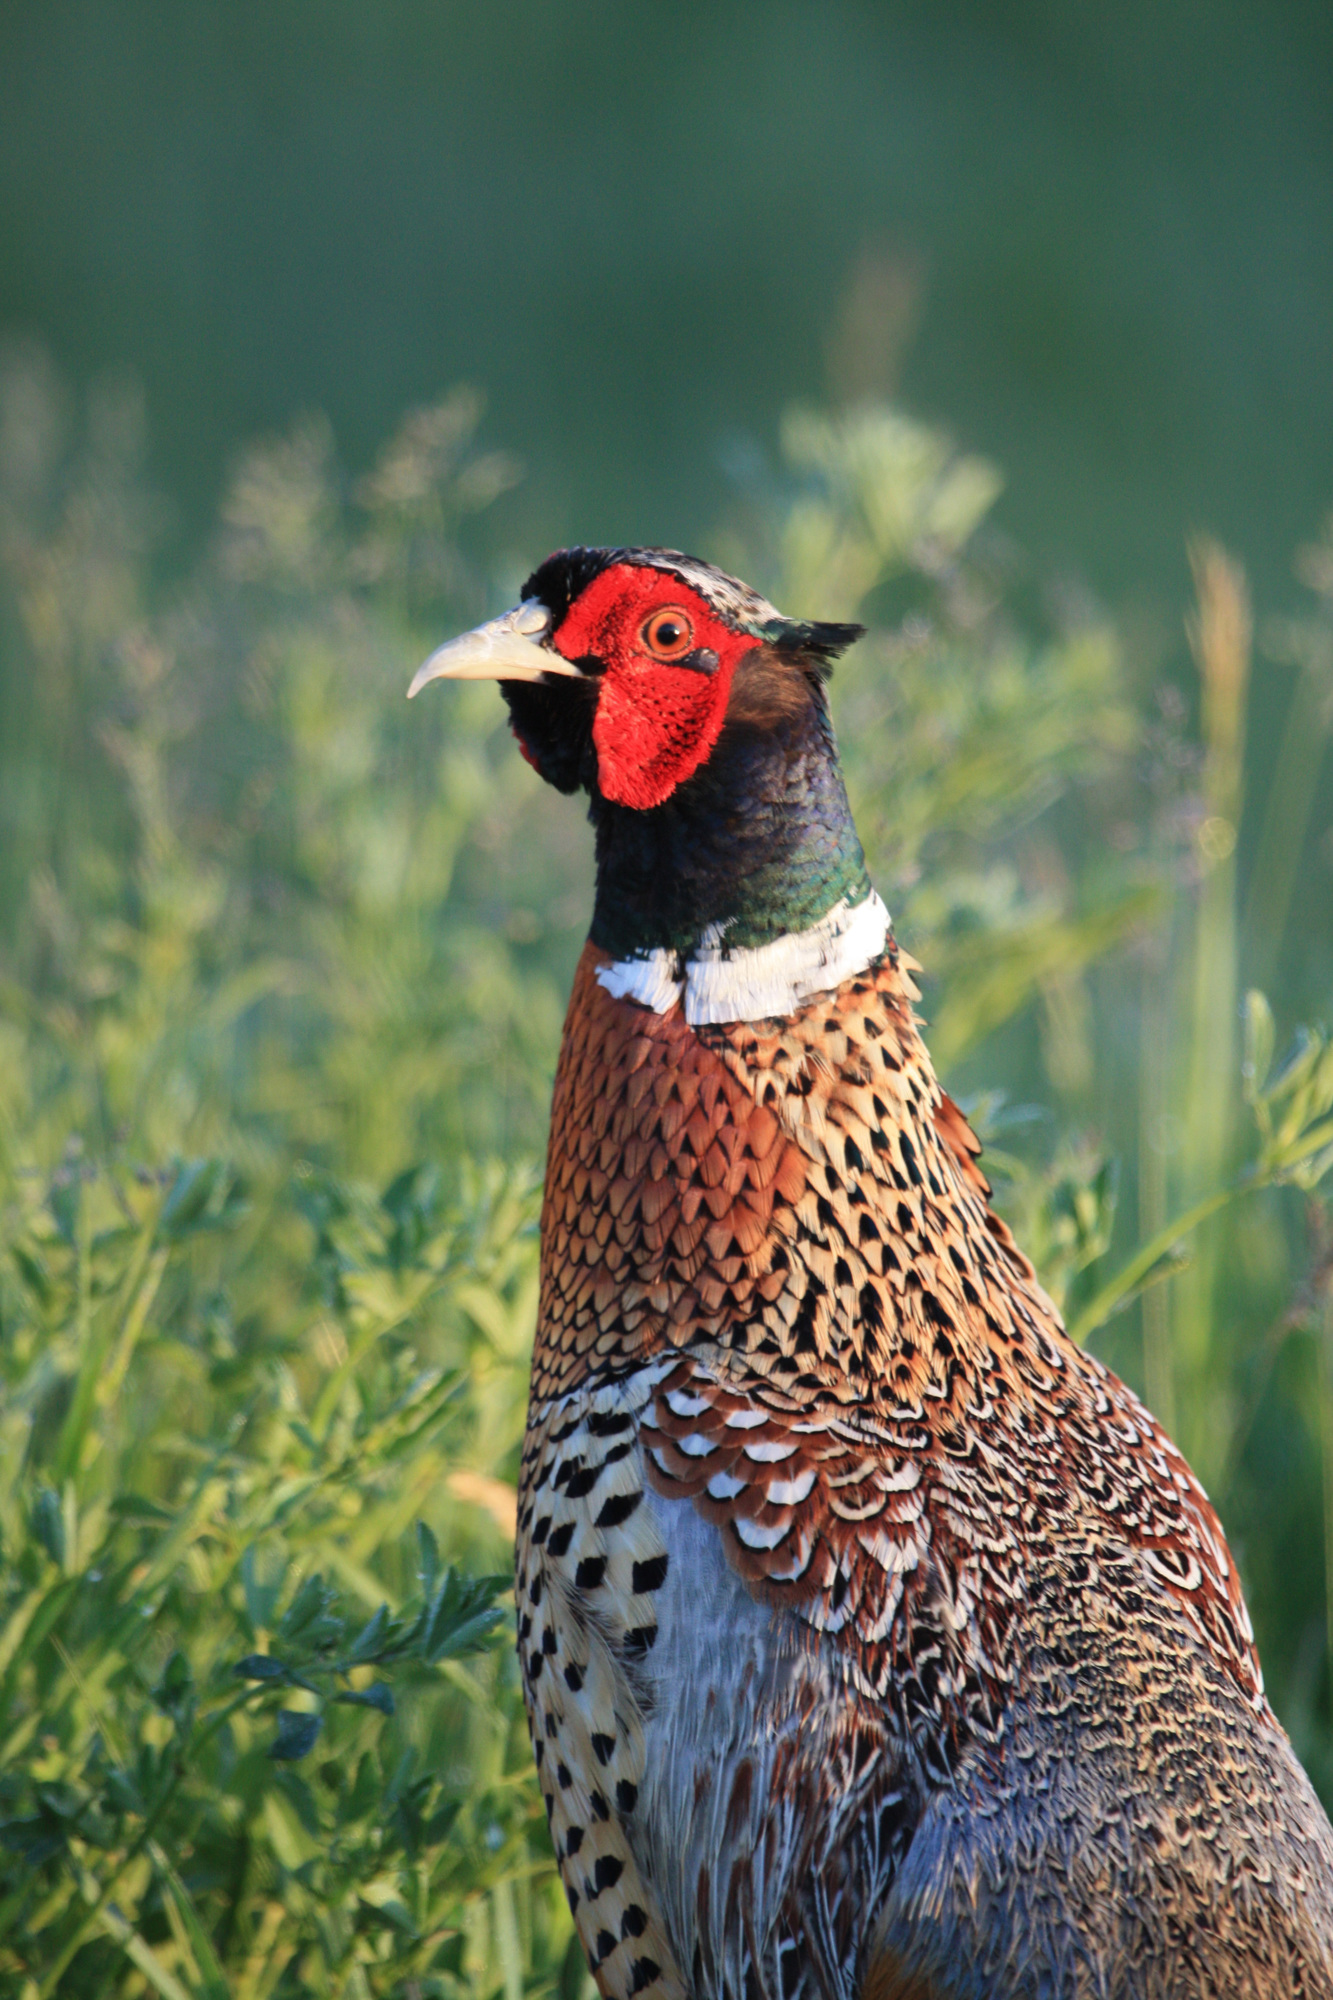 Ring-necked pheasants inhabit grasslands in Michigan.